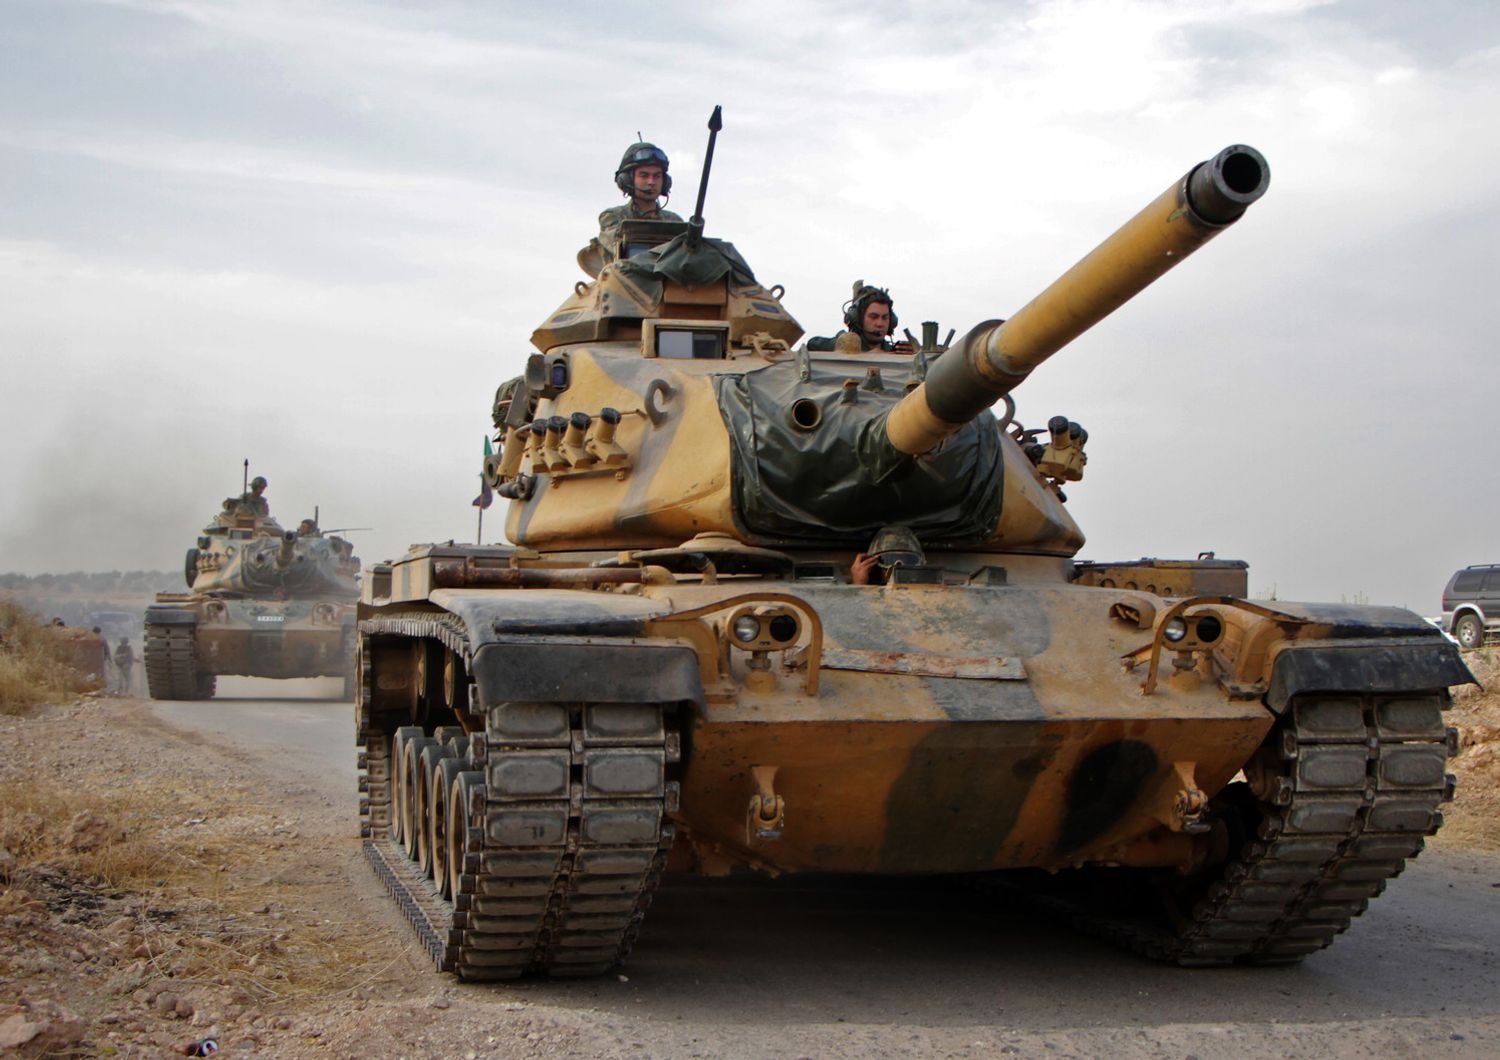 Carri armati dell'esercito turco a nord della Siria